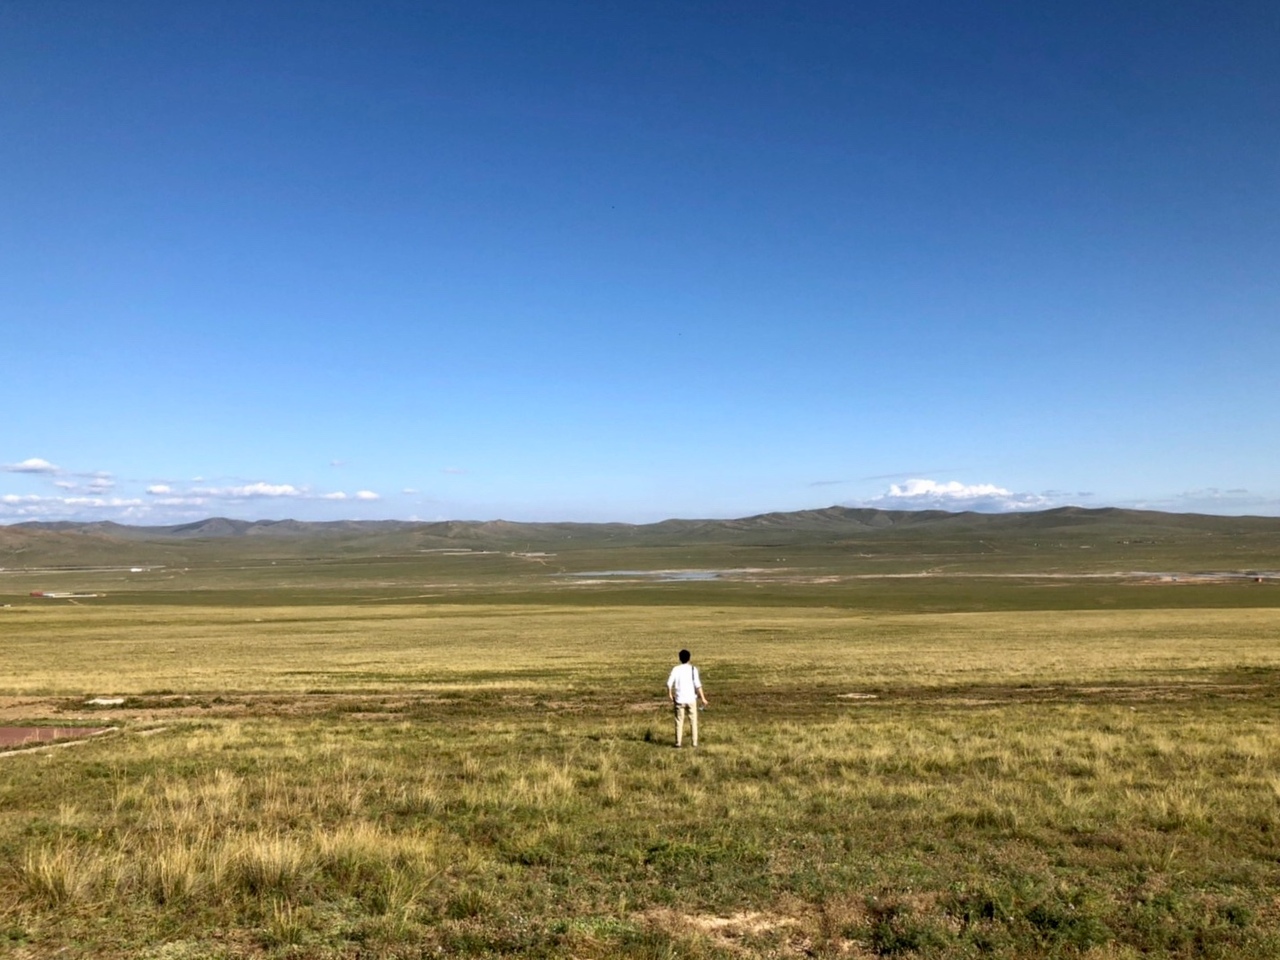 19年 モンゴル旅行 大草原の地平線と星空満喫の旅 モンゴルの旅行記 ブログ By Sacha333さん フォートラベル